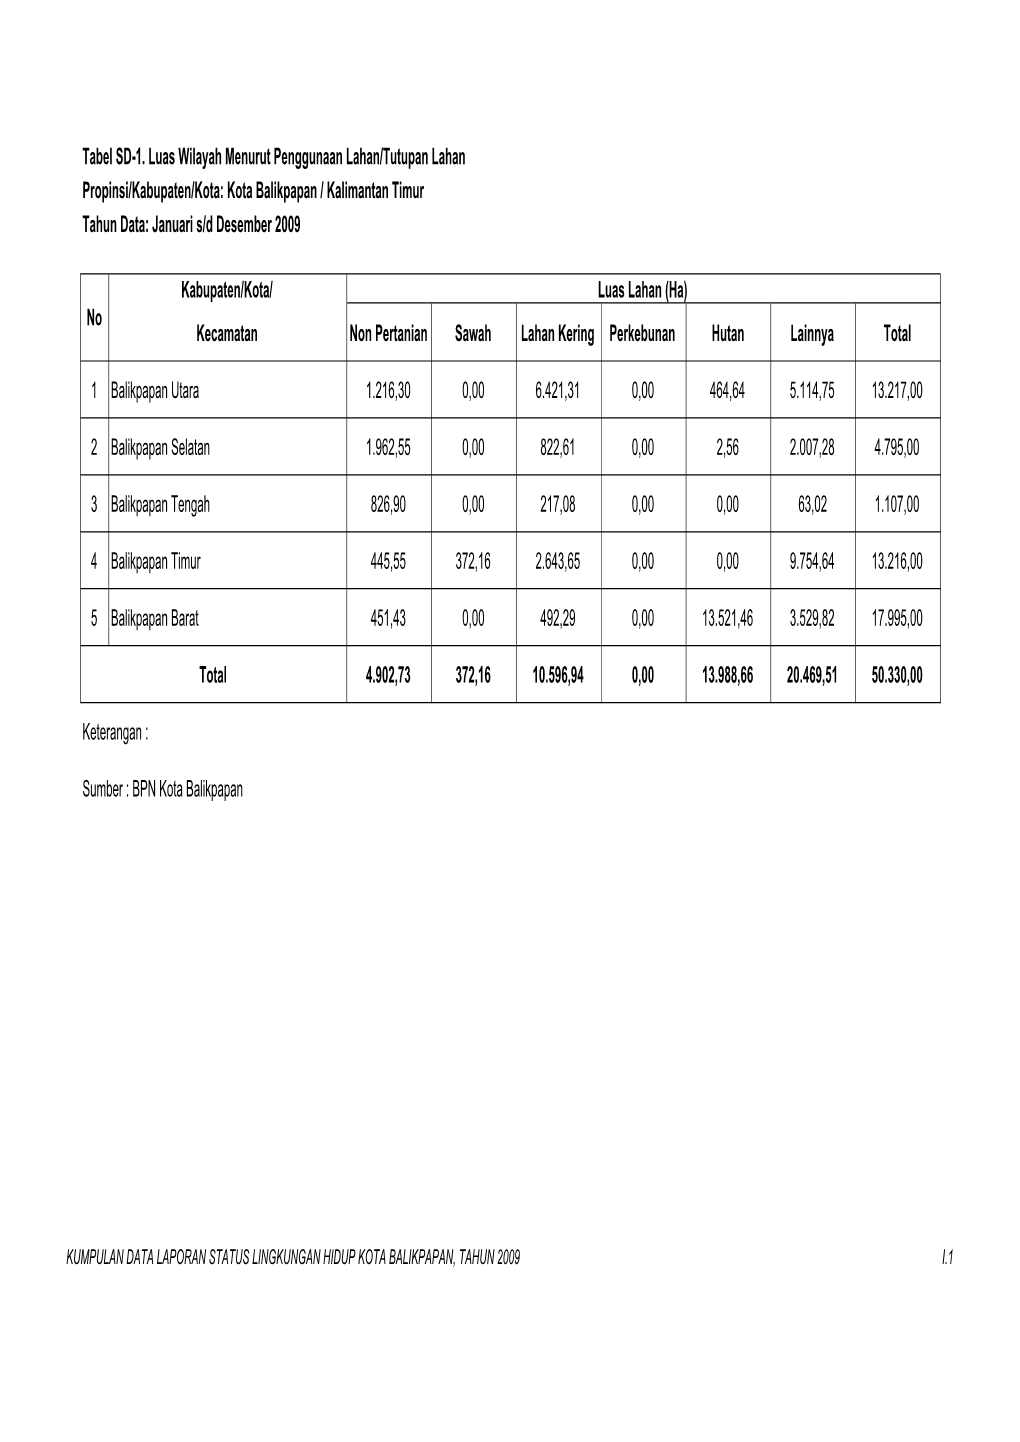 Tabel SD-1. Luas Wilayah Menurut Penggunaan Lahan/Tutupan Lahan Propinsi/Kabupaten/Kota: Kota Balikpapan / Kalimantan Timur Tahun Data: Januari S/D Desember 2009